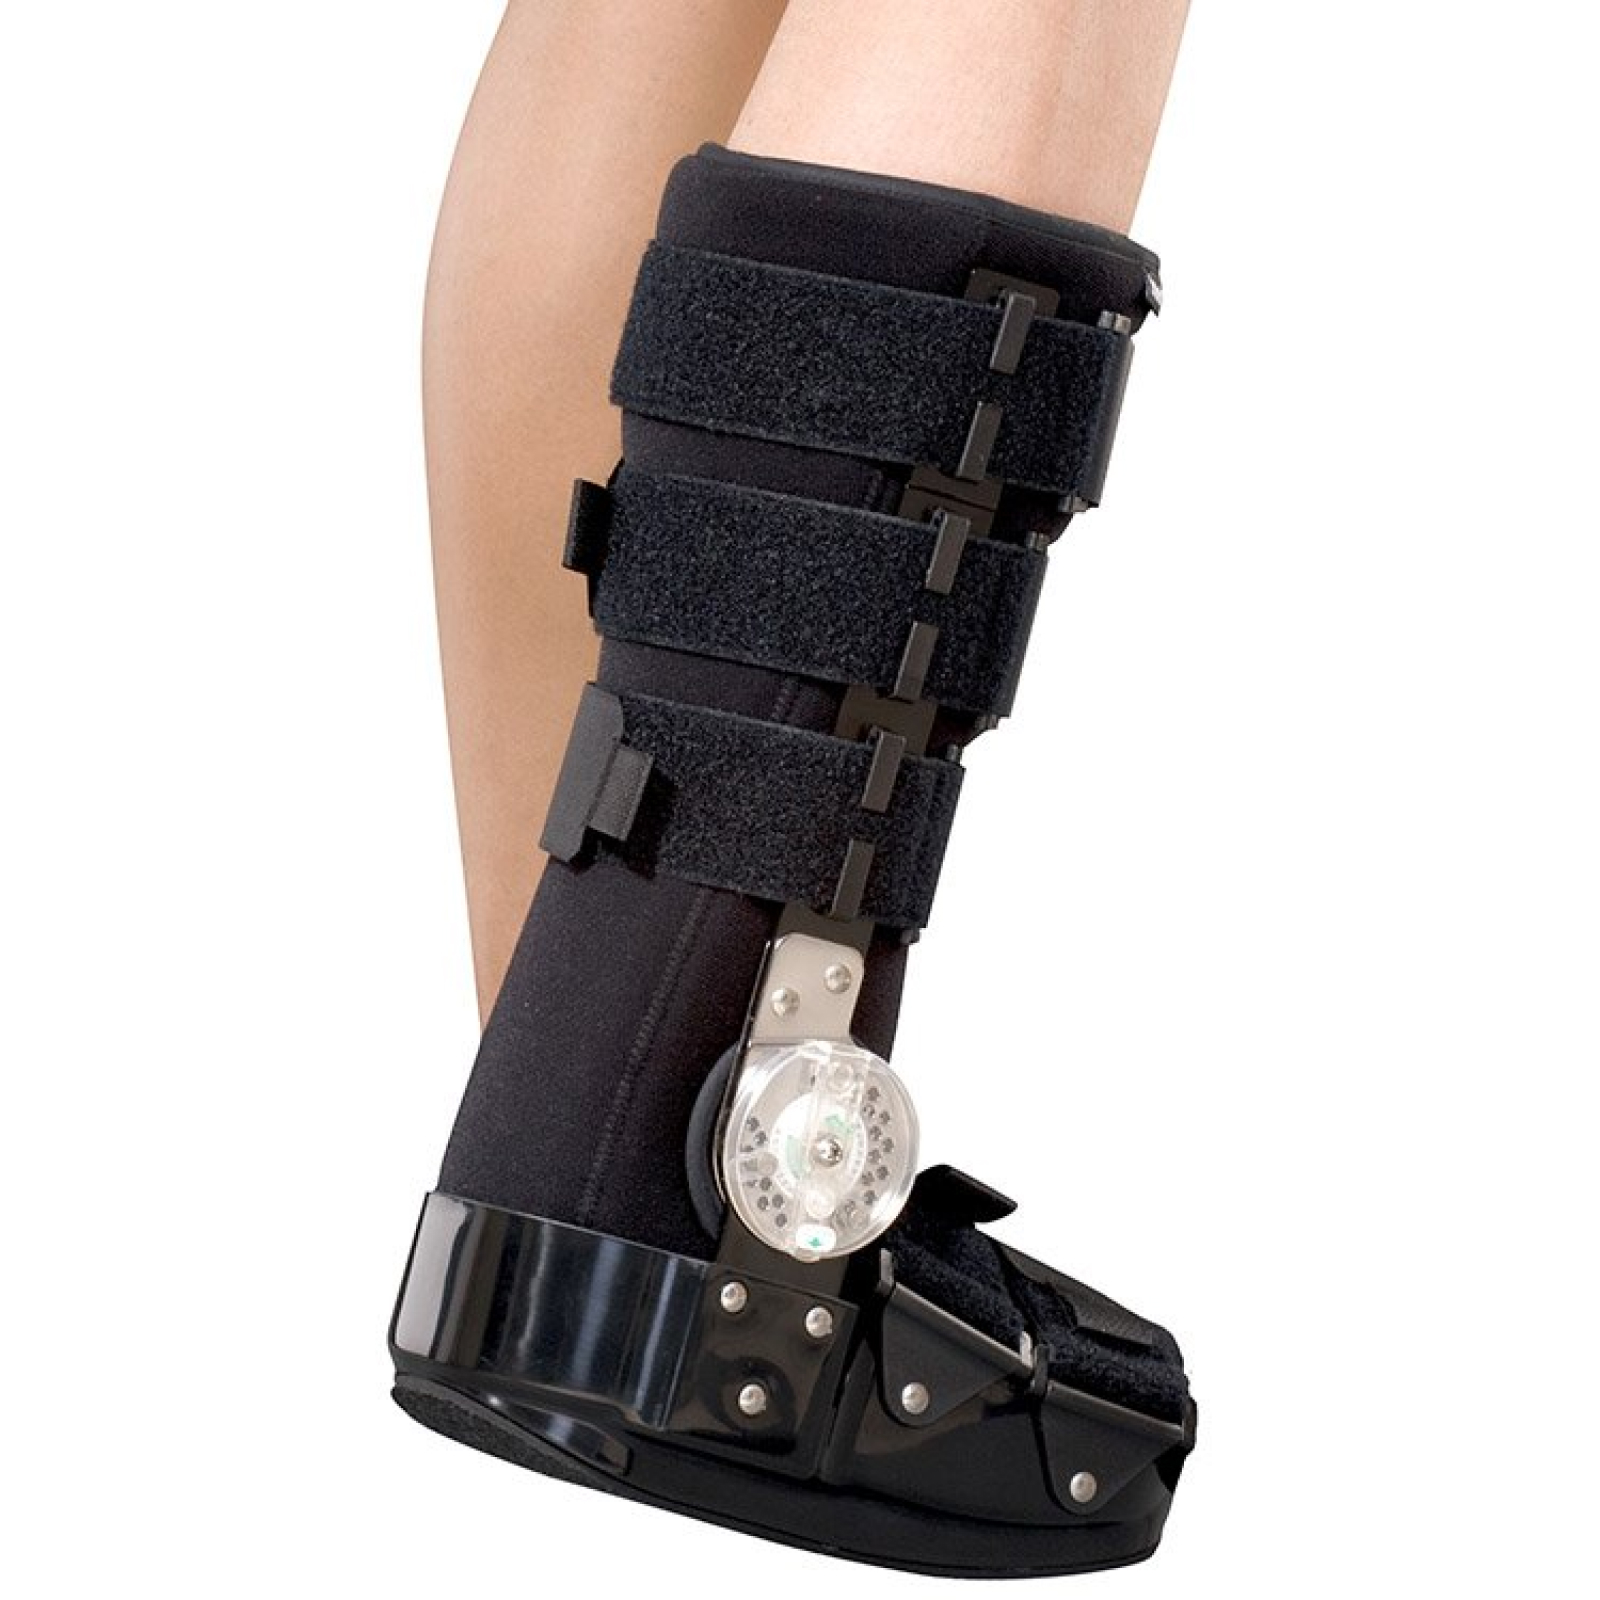 ортез на коленный сустав с шарнирами регулируемый инструкция по применению